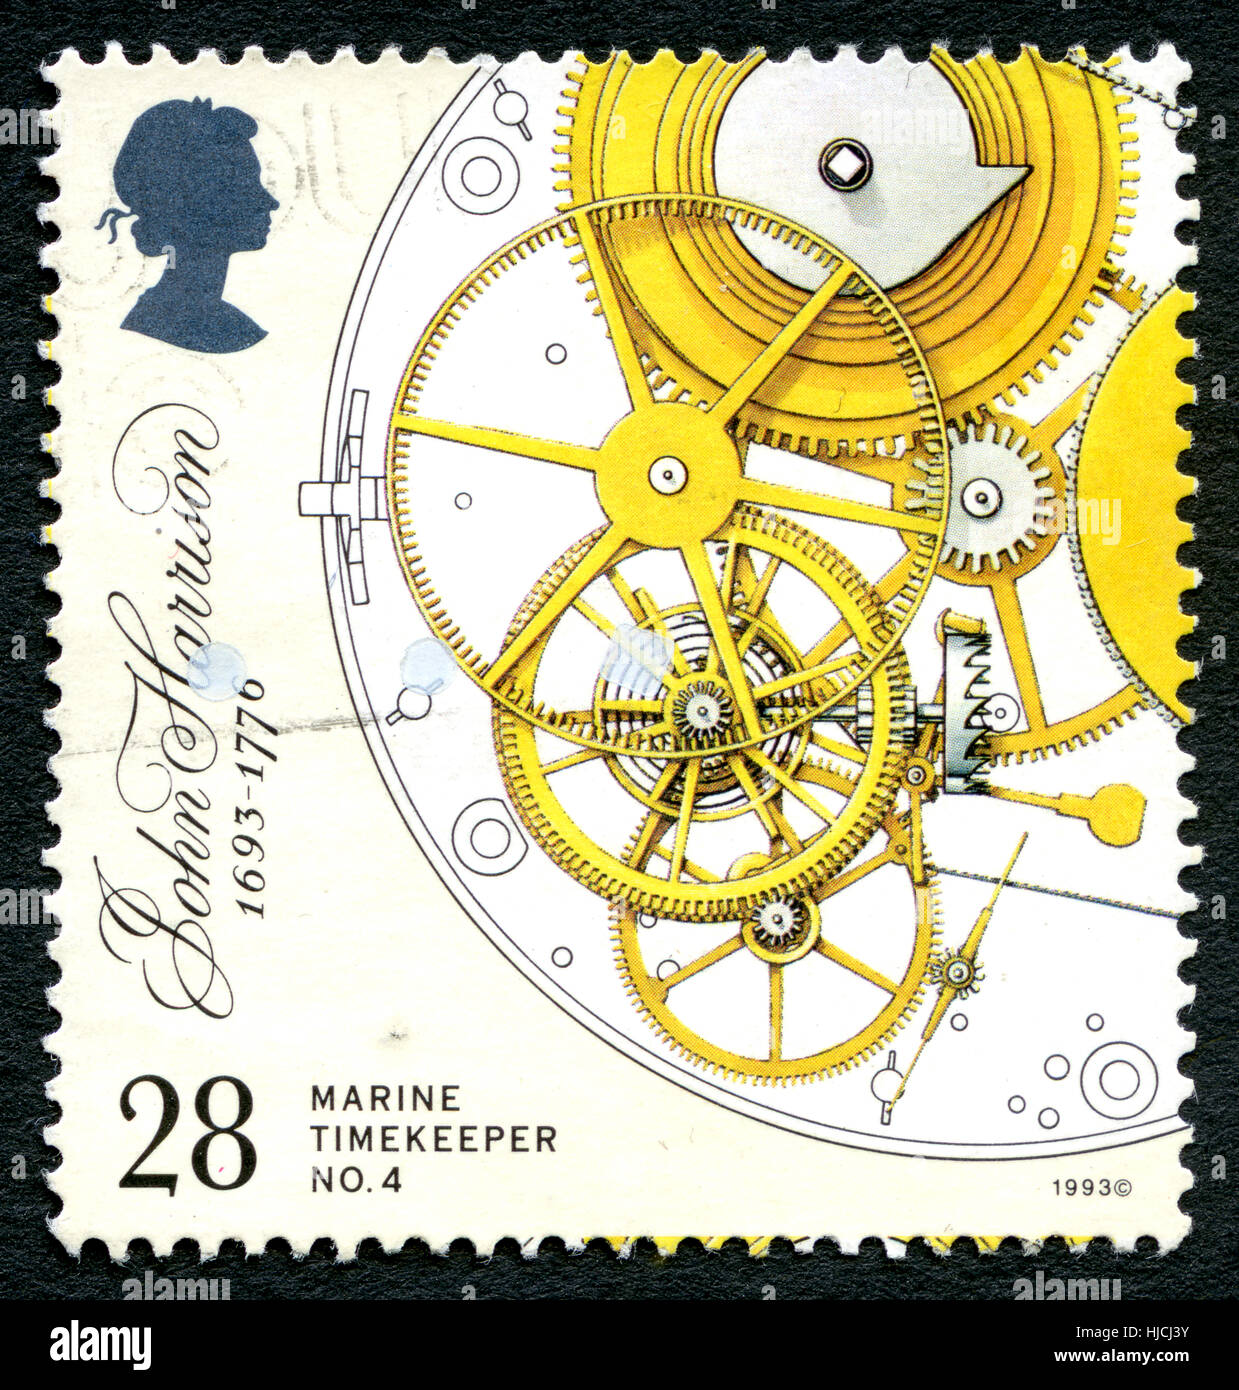 Regno Unito - circa 1993: un usato francobollo DAL REGNO UNITO, raffigura cronometro marino da inventore John Harrison, circa 1993. Foto Stock